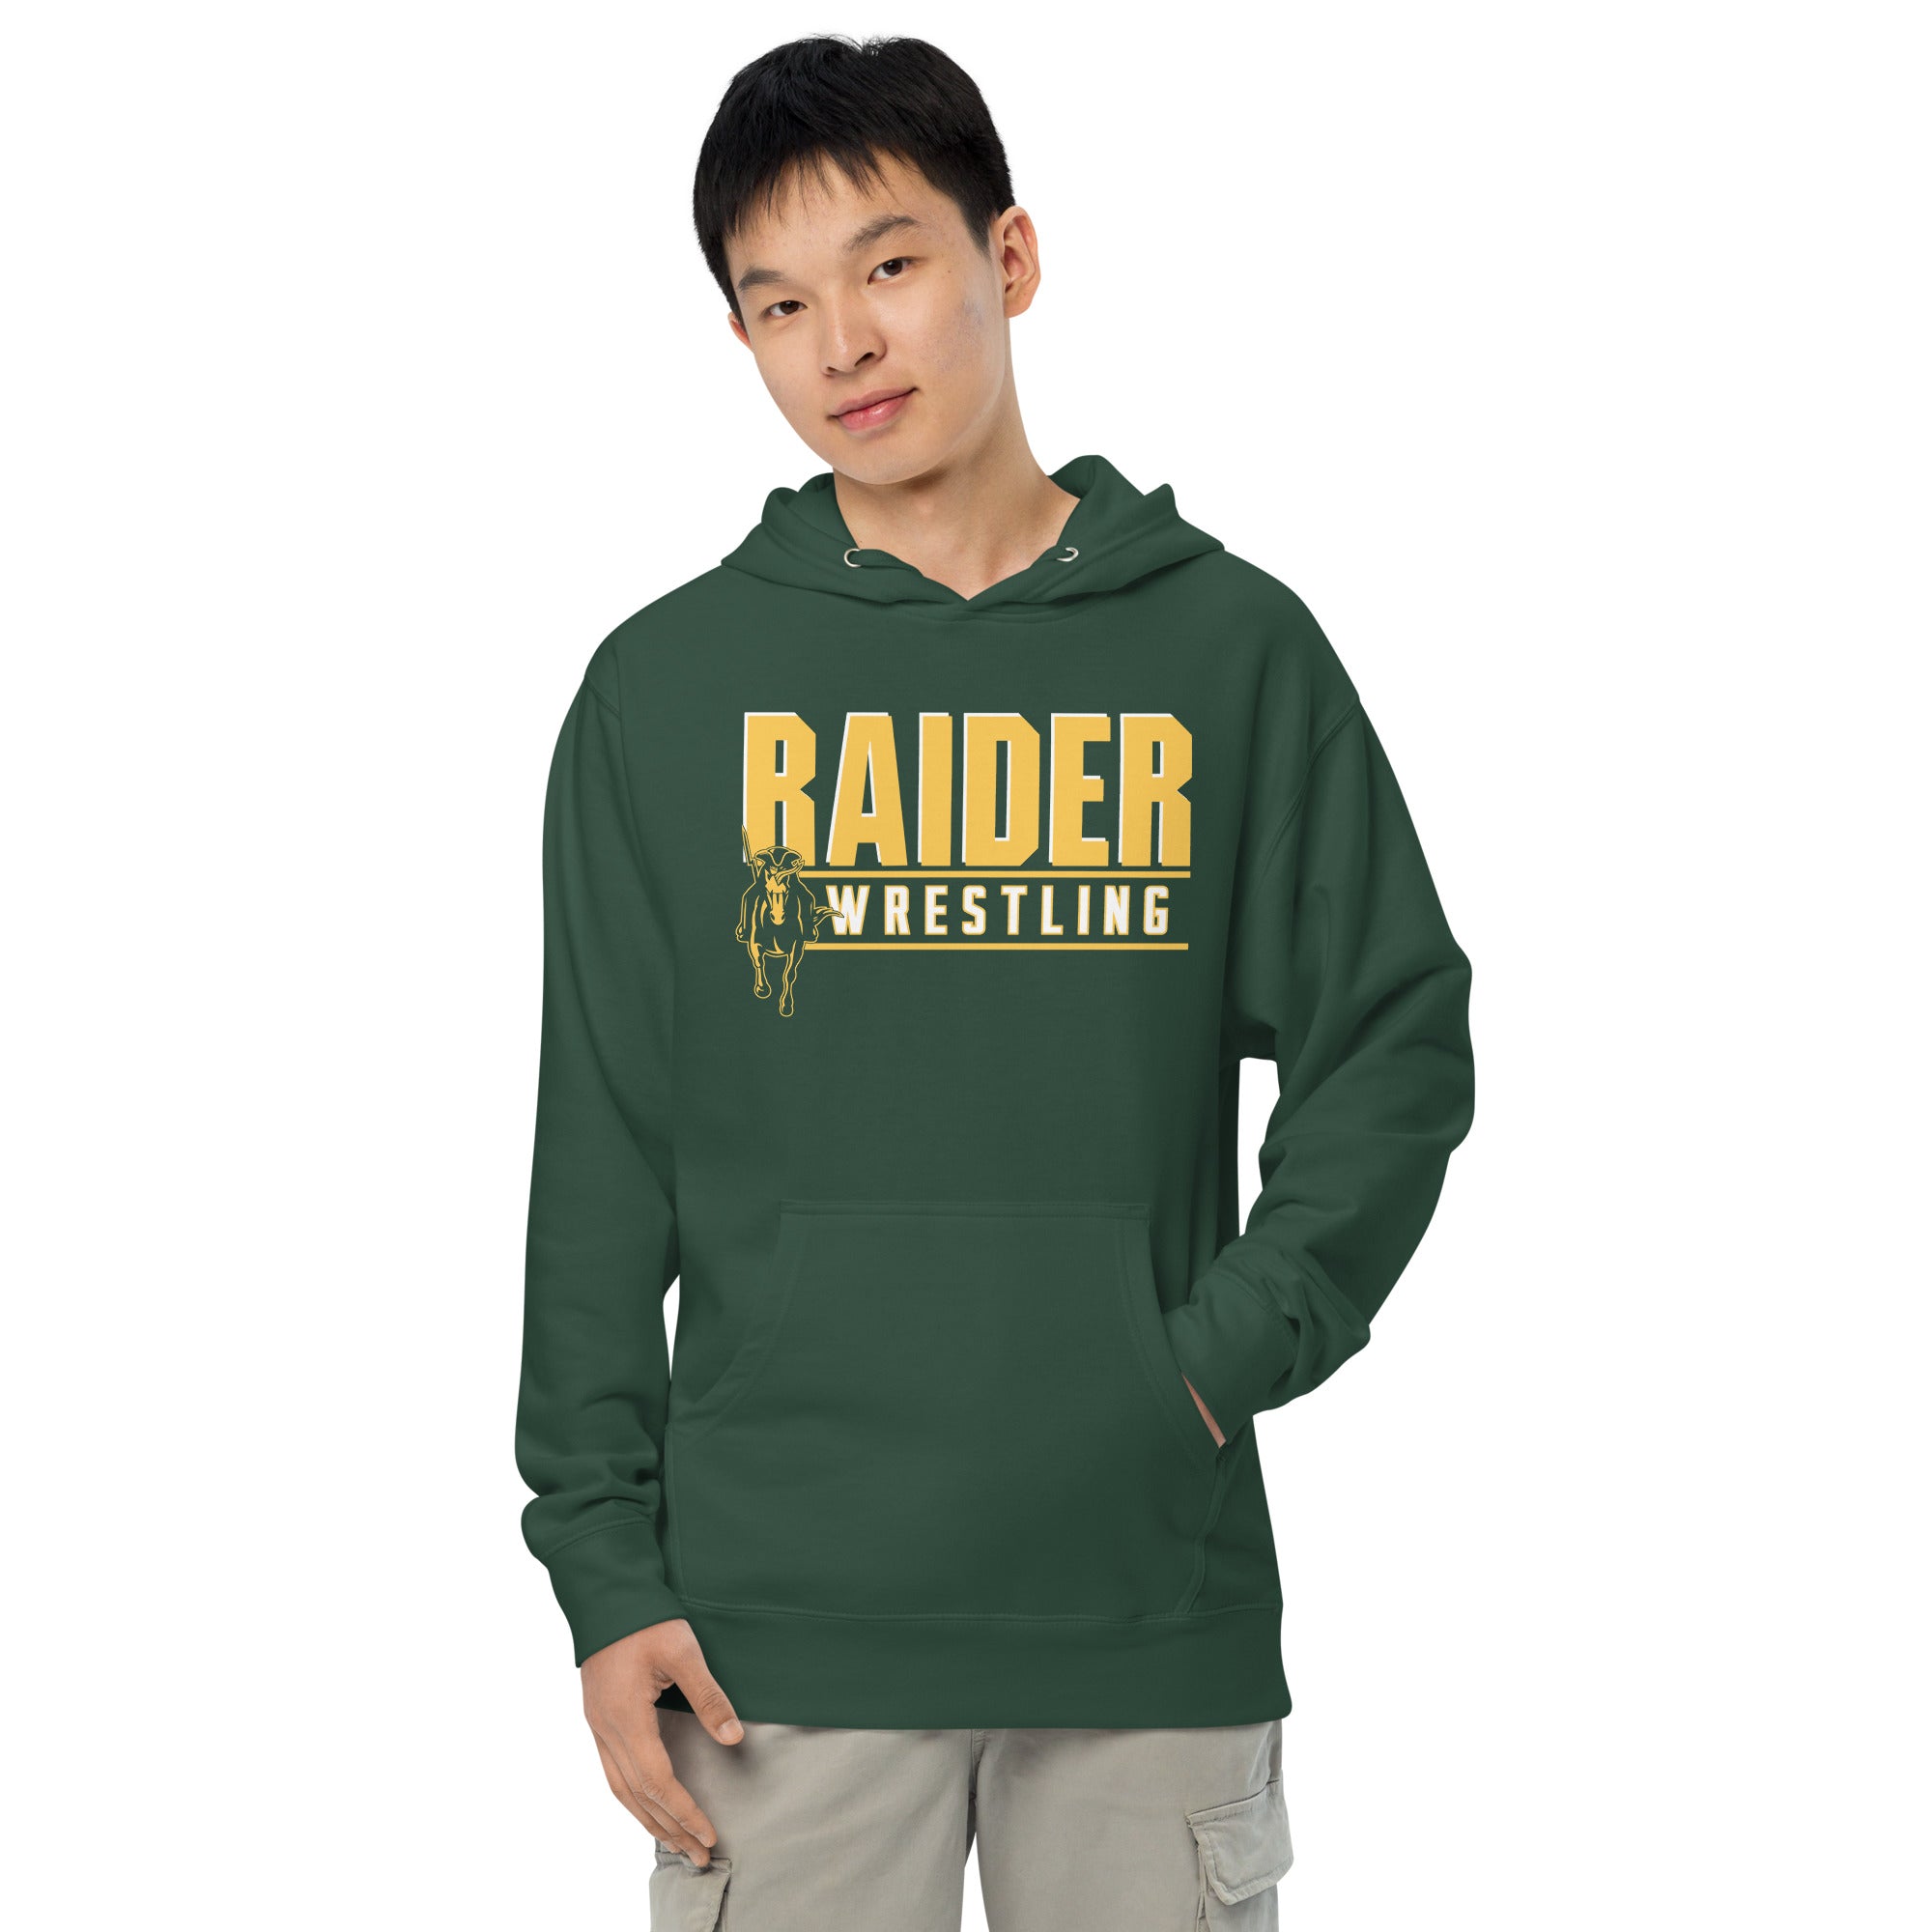 SMS Raider Wrestling Unisex midweight hoodie